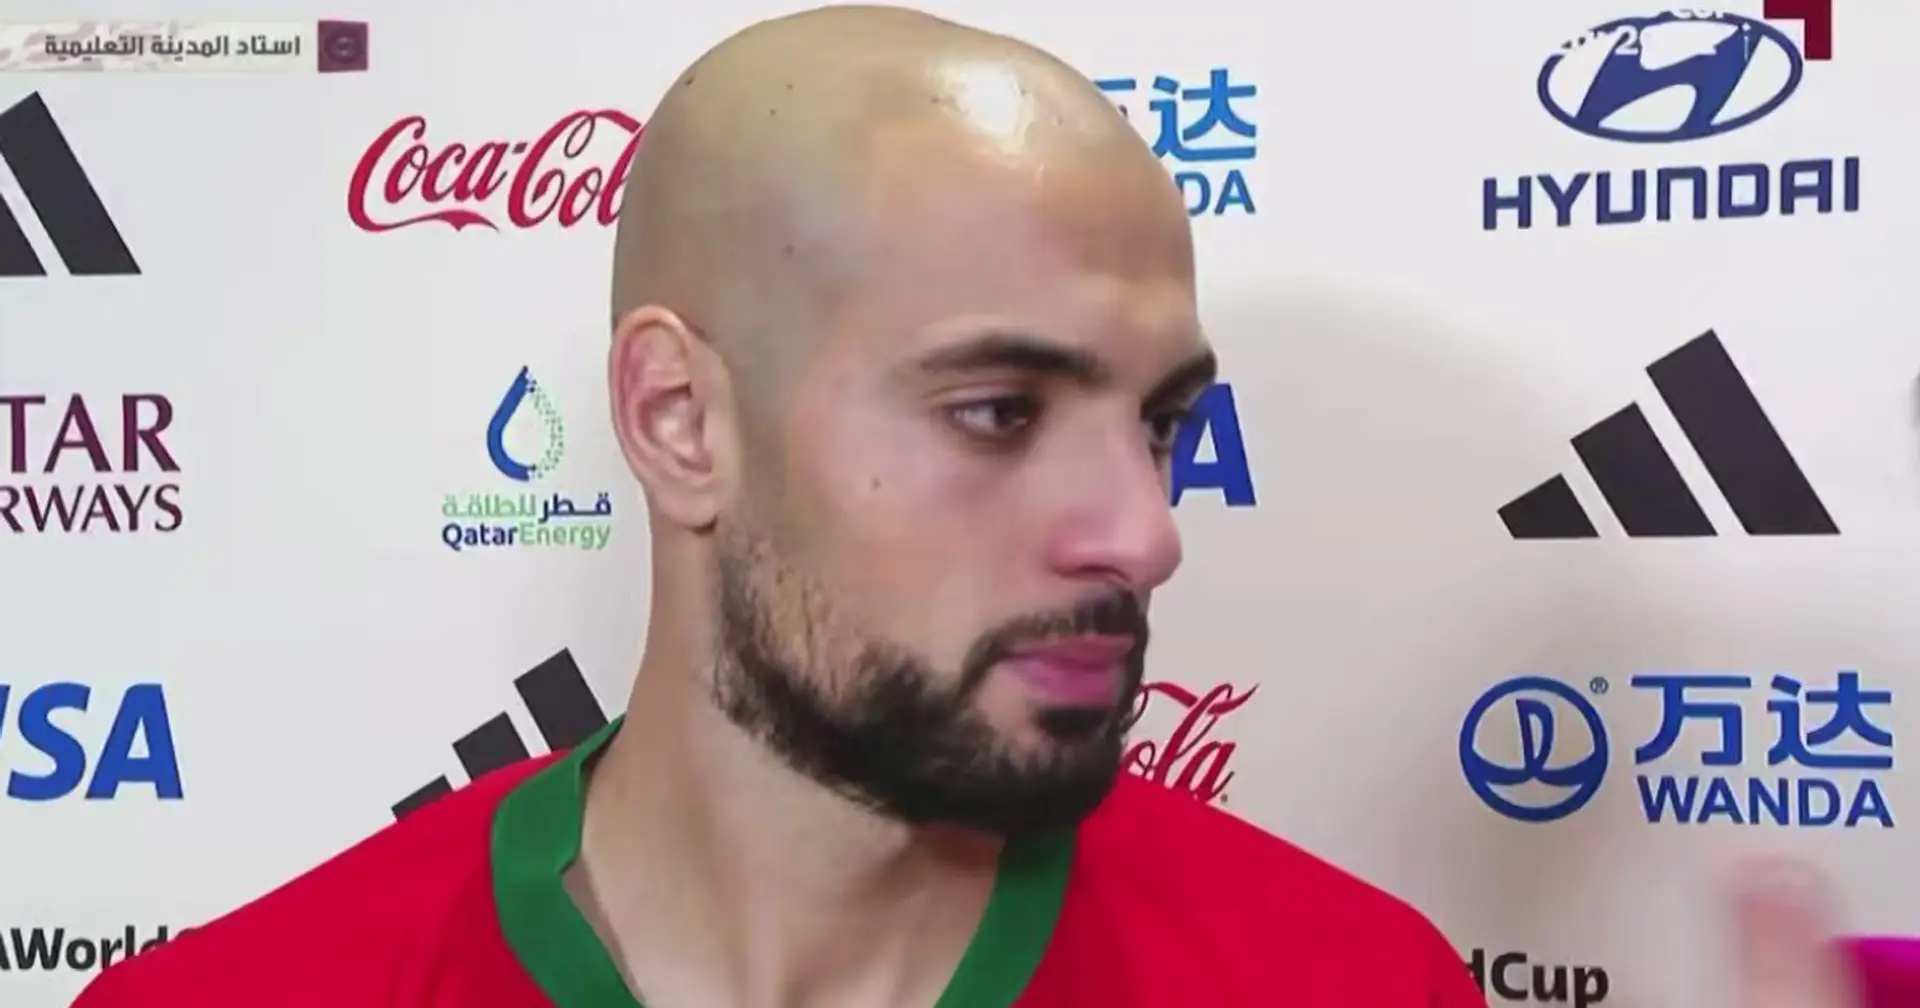 La star marocaine de la Coupe du monde, Amrabat, réagit à ses liens avec de grands clubs comme Barcelone